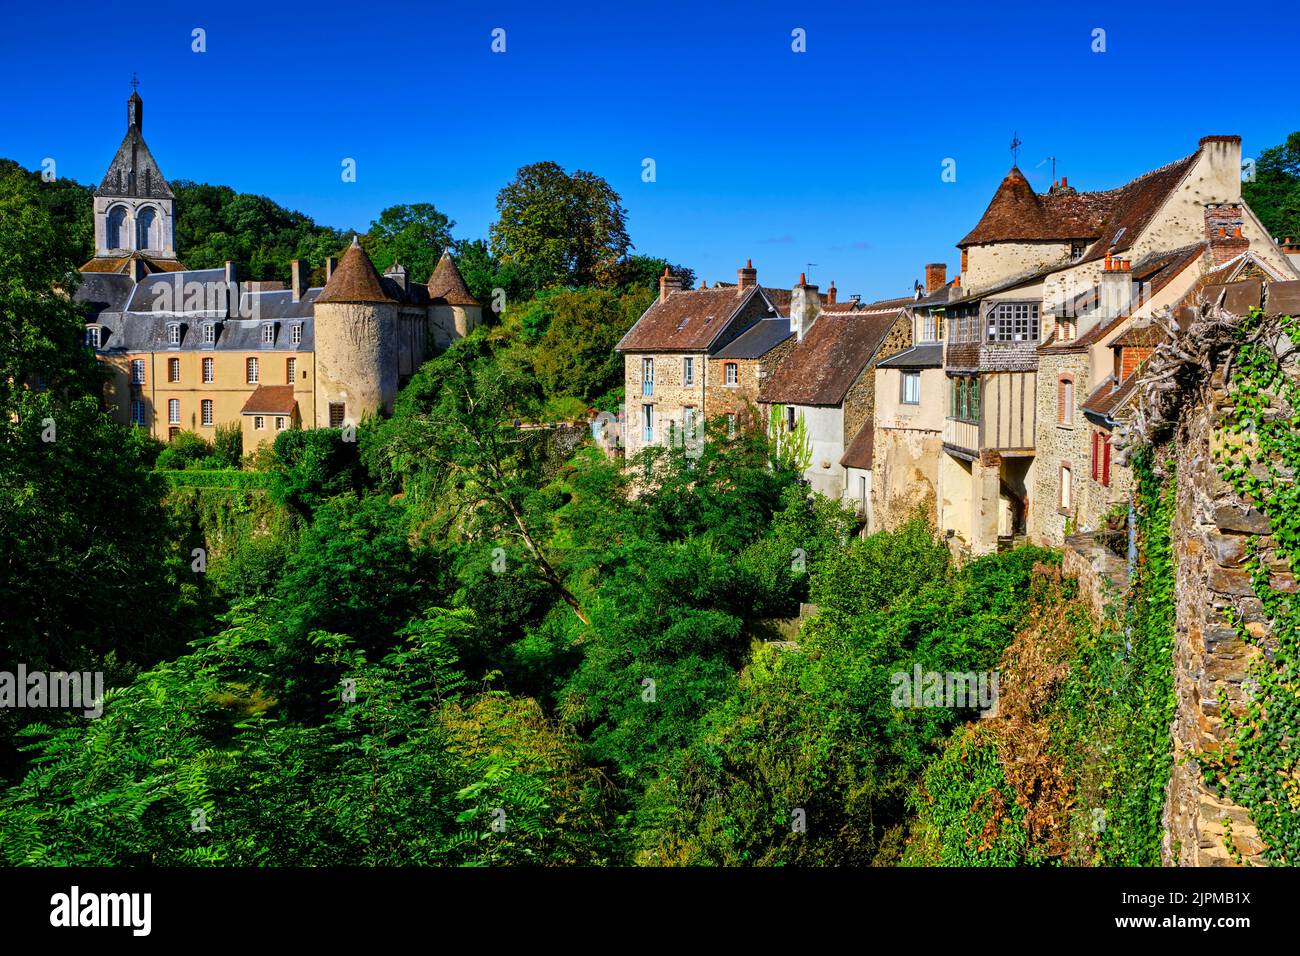 La France, de l'Indre (36), vallée de la Creuse, creuse, les plus beaux villages de France, le château et l'église romane du xiie siècle Banque D'Images